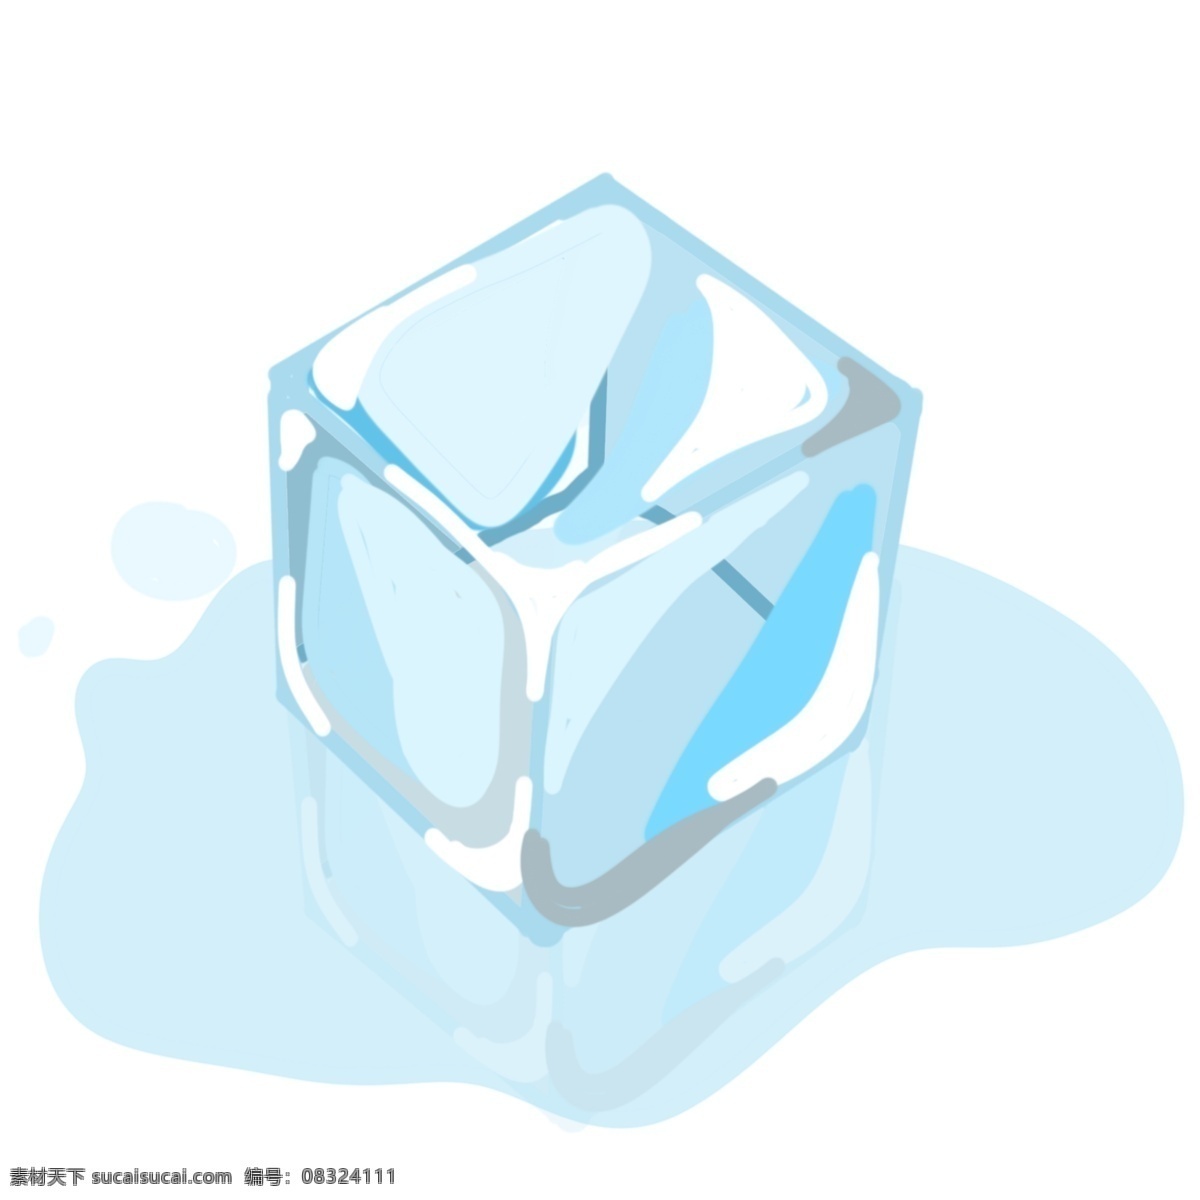 一块 蓝色 冰块 插图 融化的冰块 夏季 清凉冰块 冰 透明冰块 立体冰块 一块冰块 水 立体冰块插图